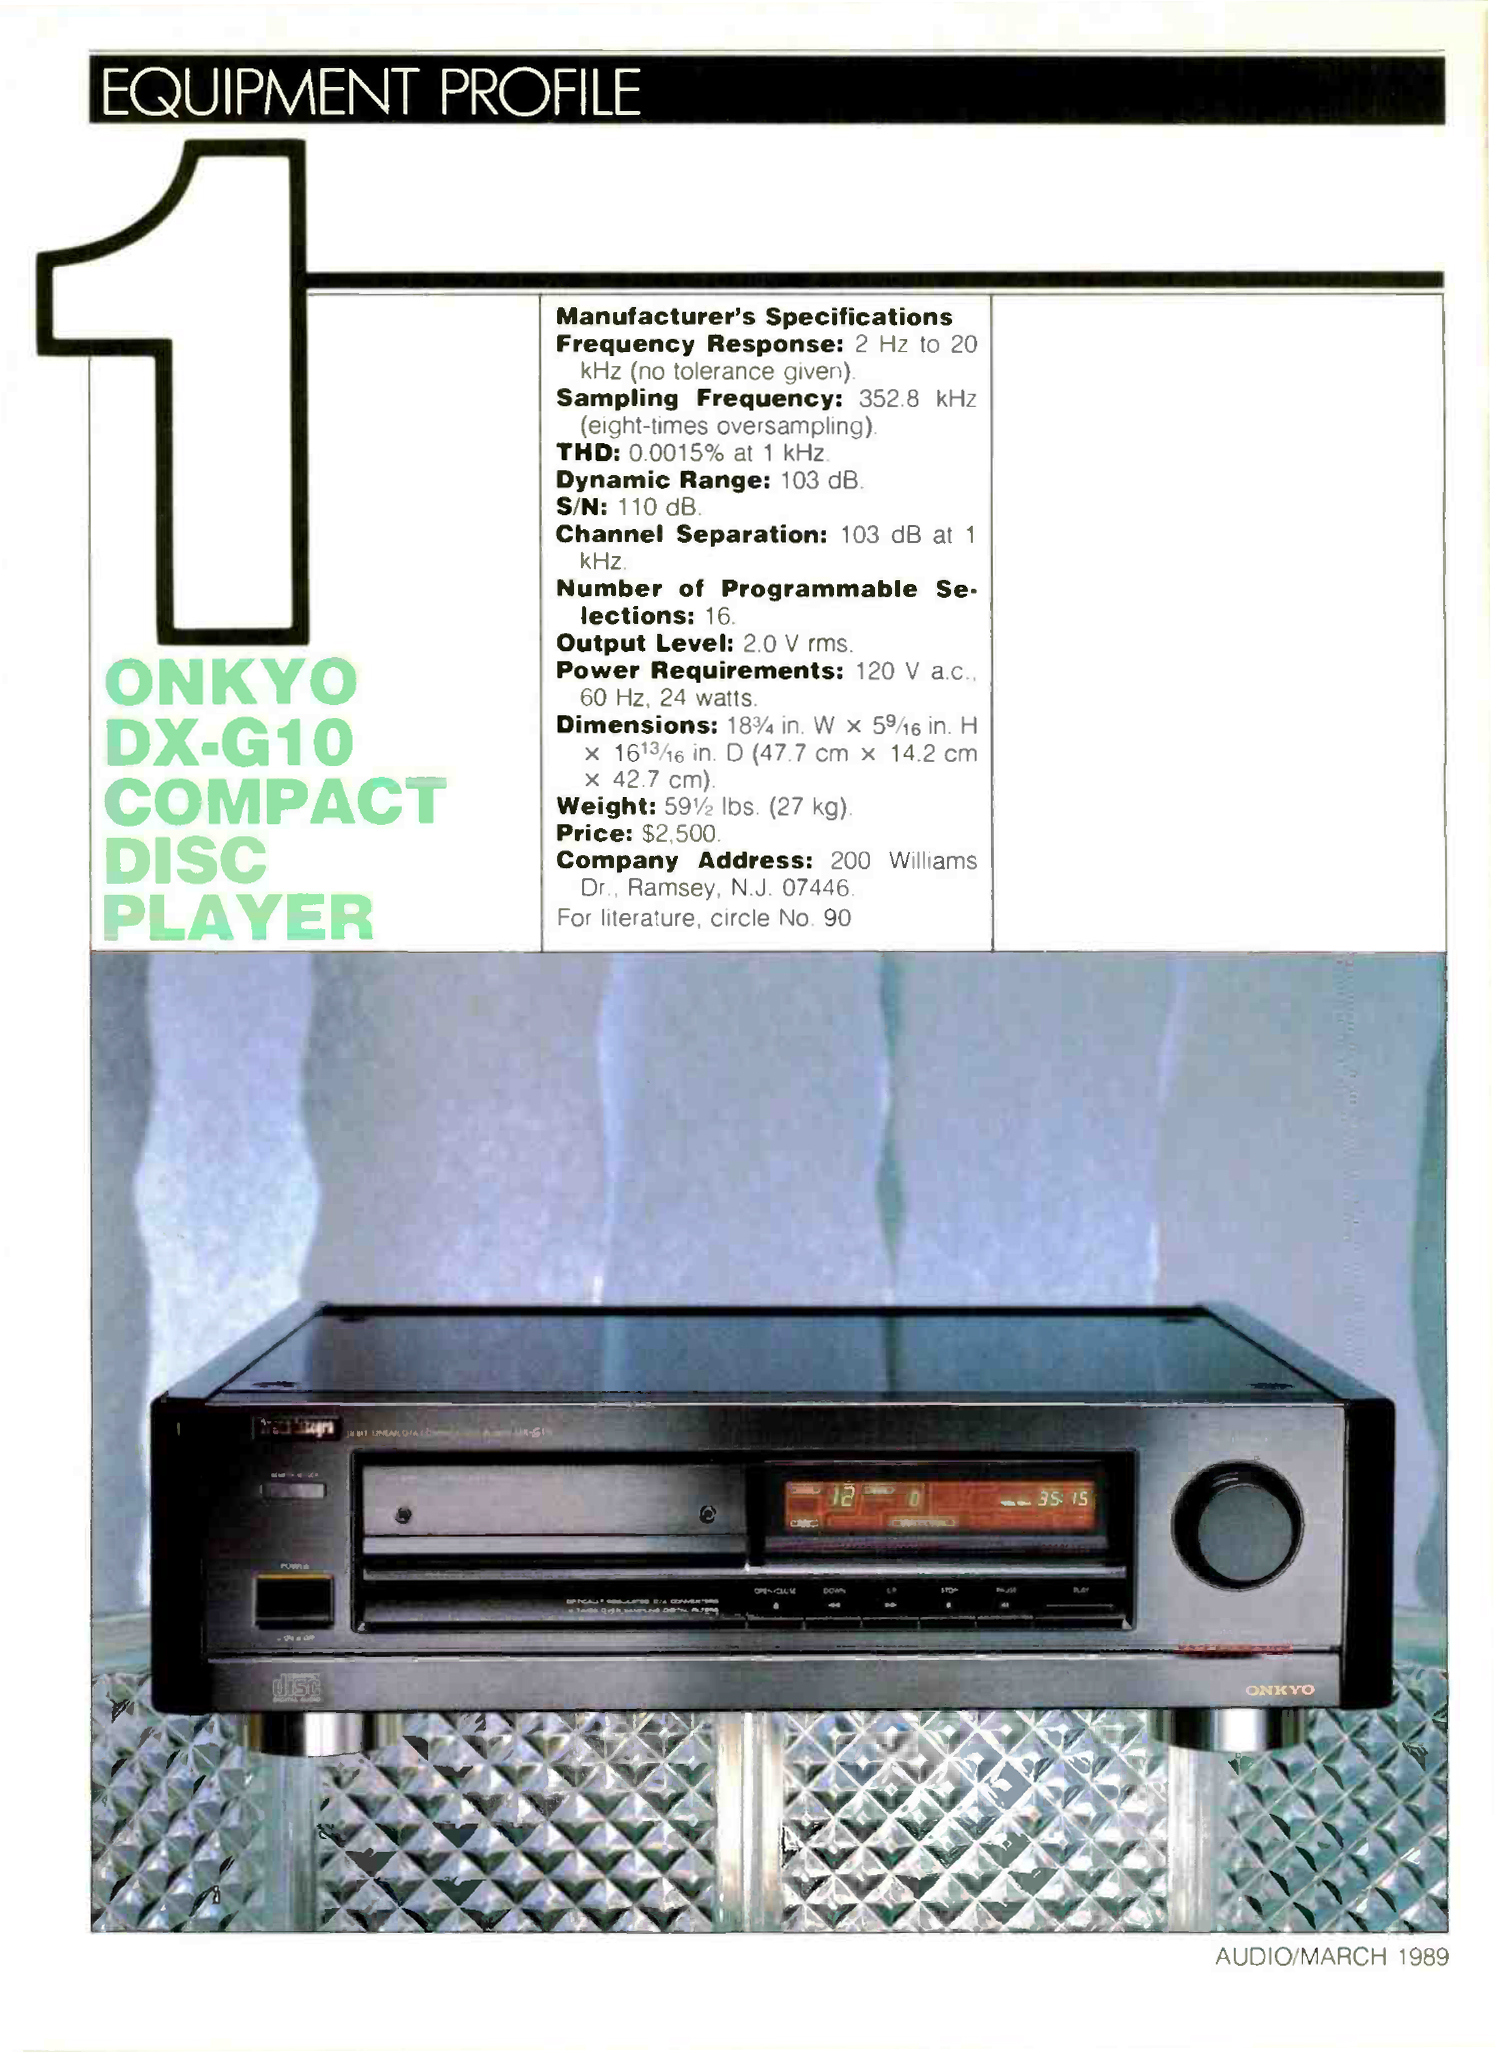 Onkyo DX-G 10-Werbung-1989.jpg